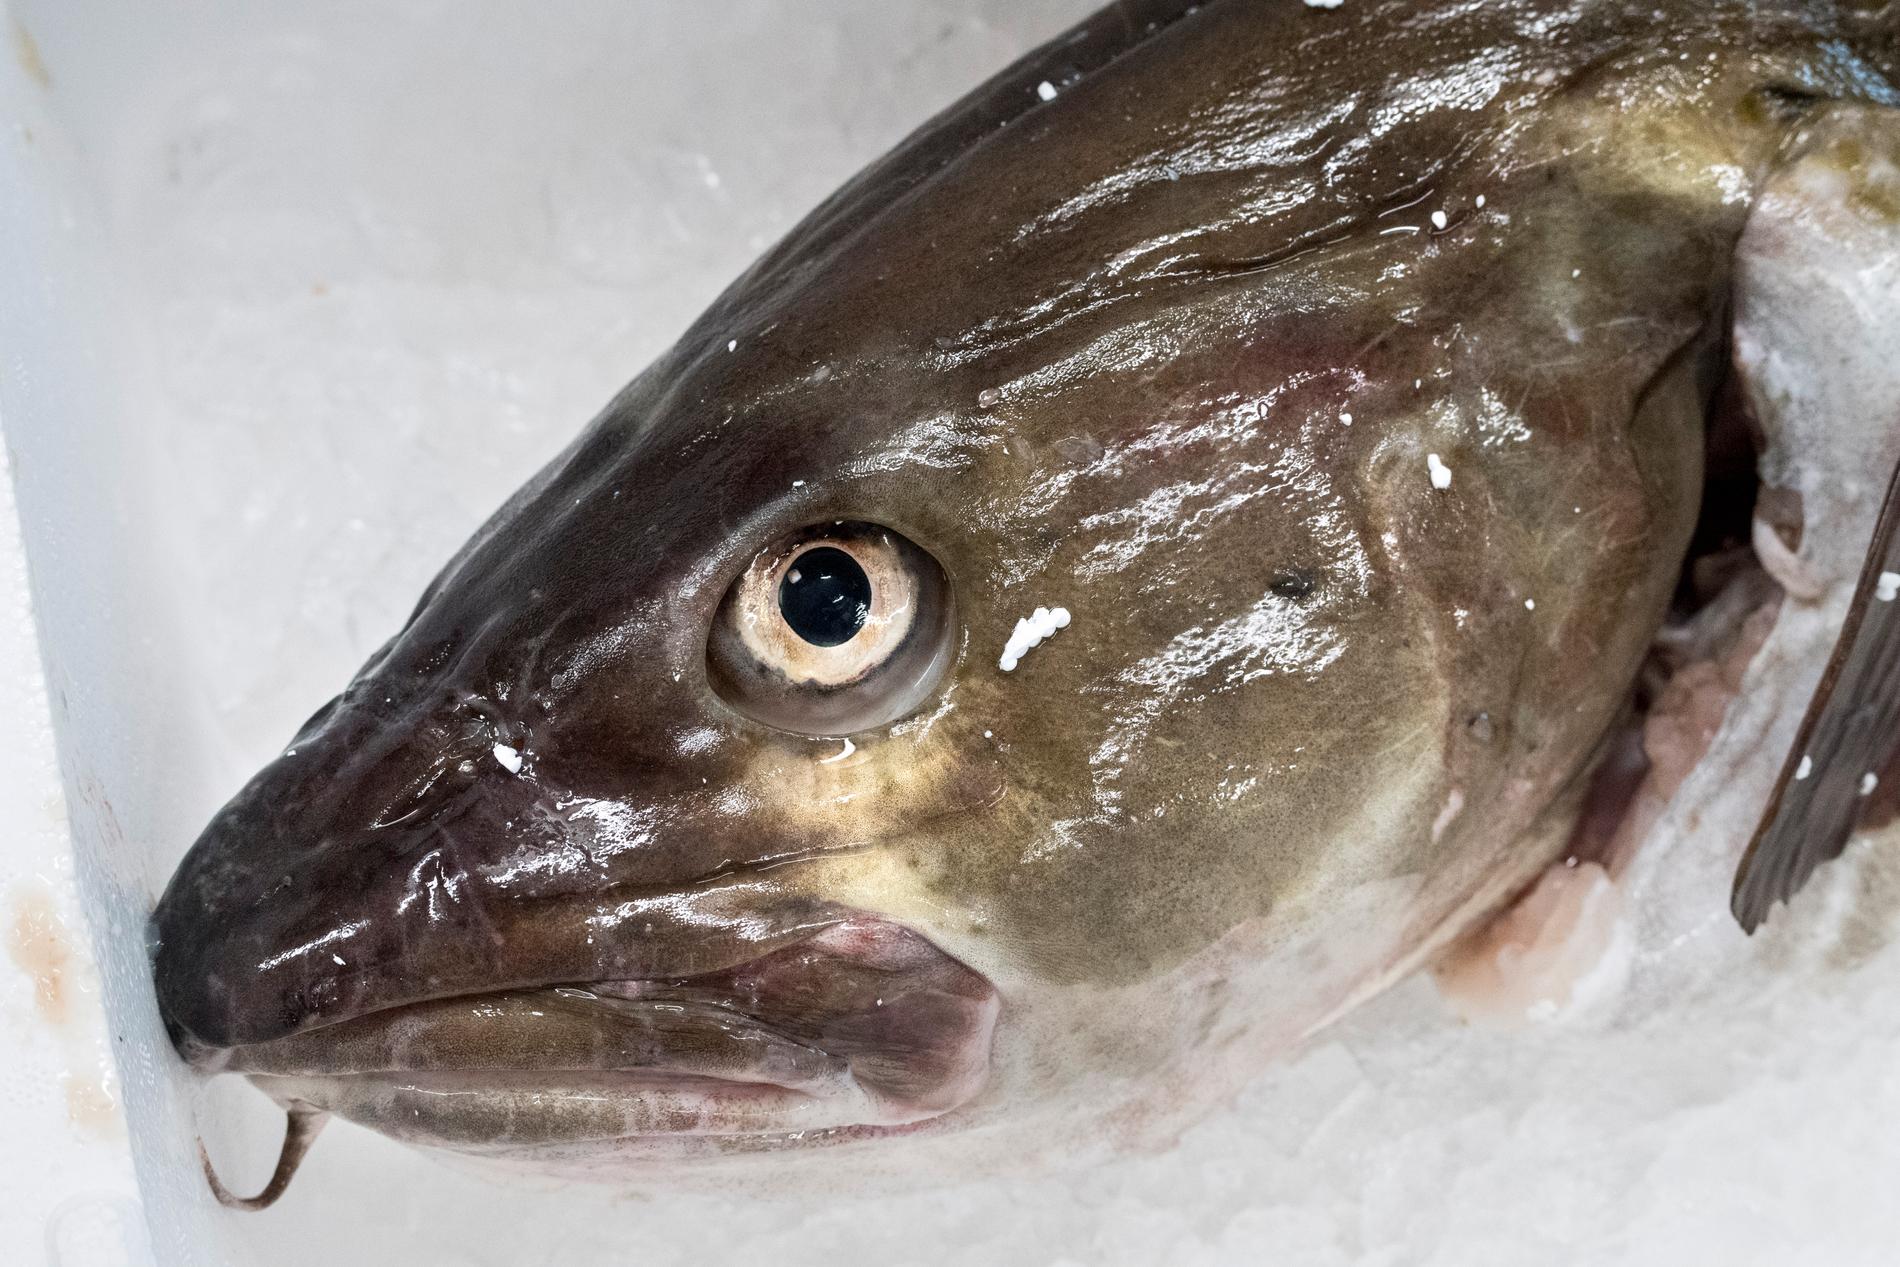 Torskbestånden i många delar av Europa är hårt åtgångna. WWF vill att konsumenterna undviker torsk från Östersjön. Däremot går det bra att äta torsk från Barents hav.